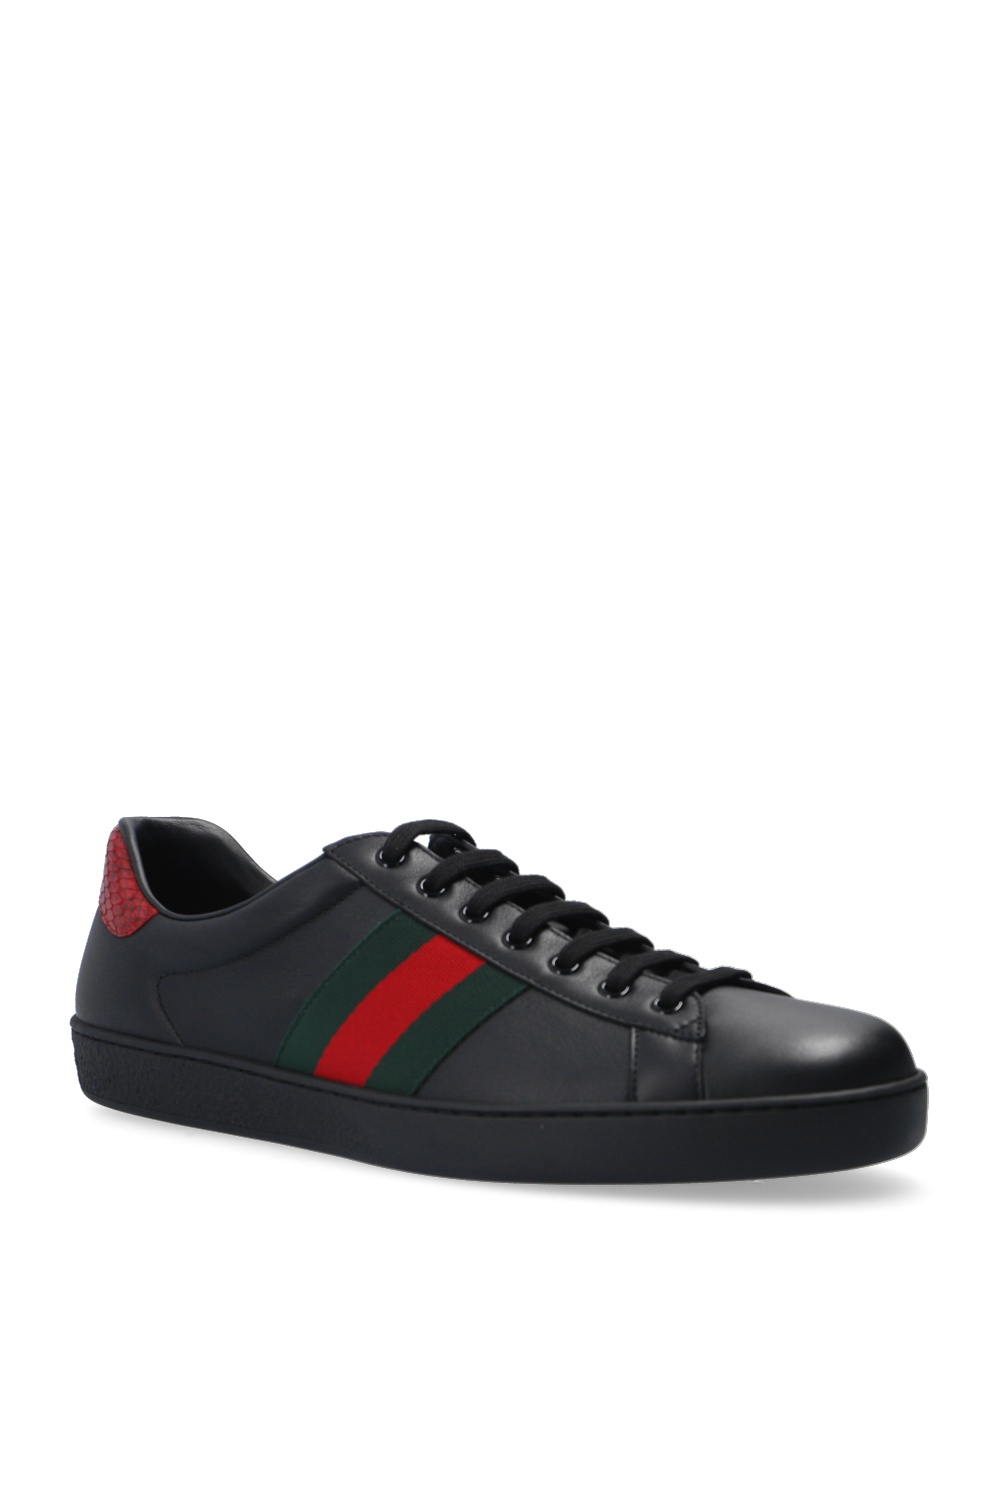 Gucci 'Ace' sneakers | Men's Shoes | IetpShops